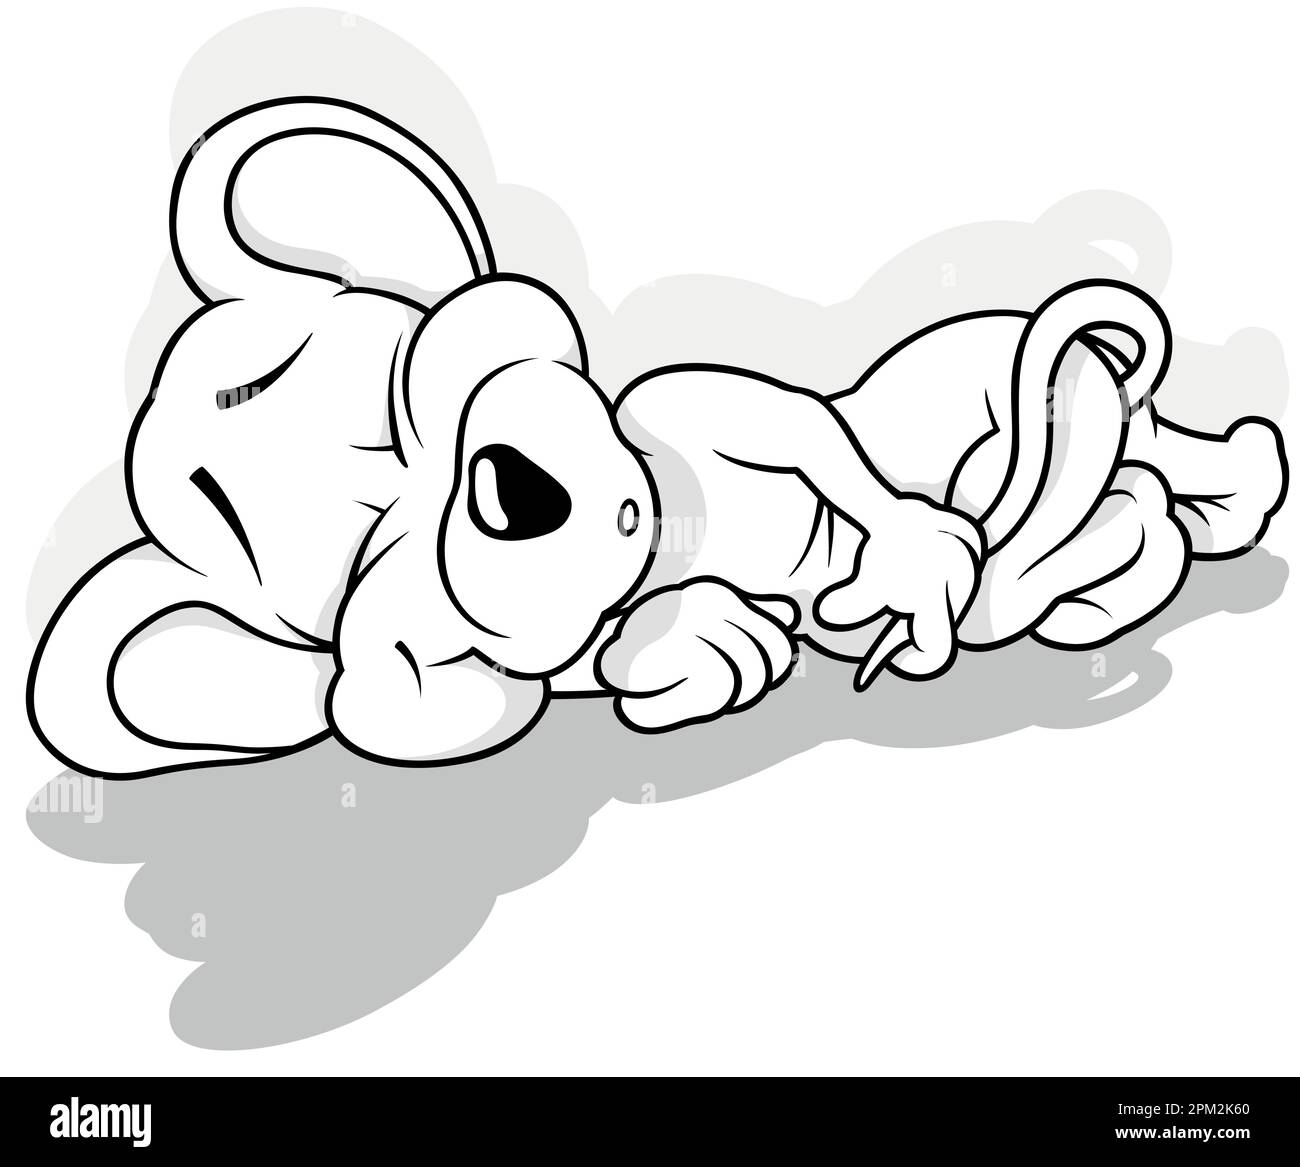 Zeichnung einer schlafenden Maus auf dem Boden Stock Vektor